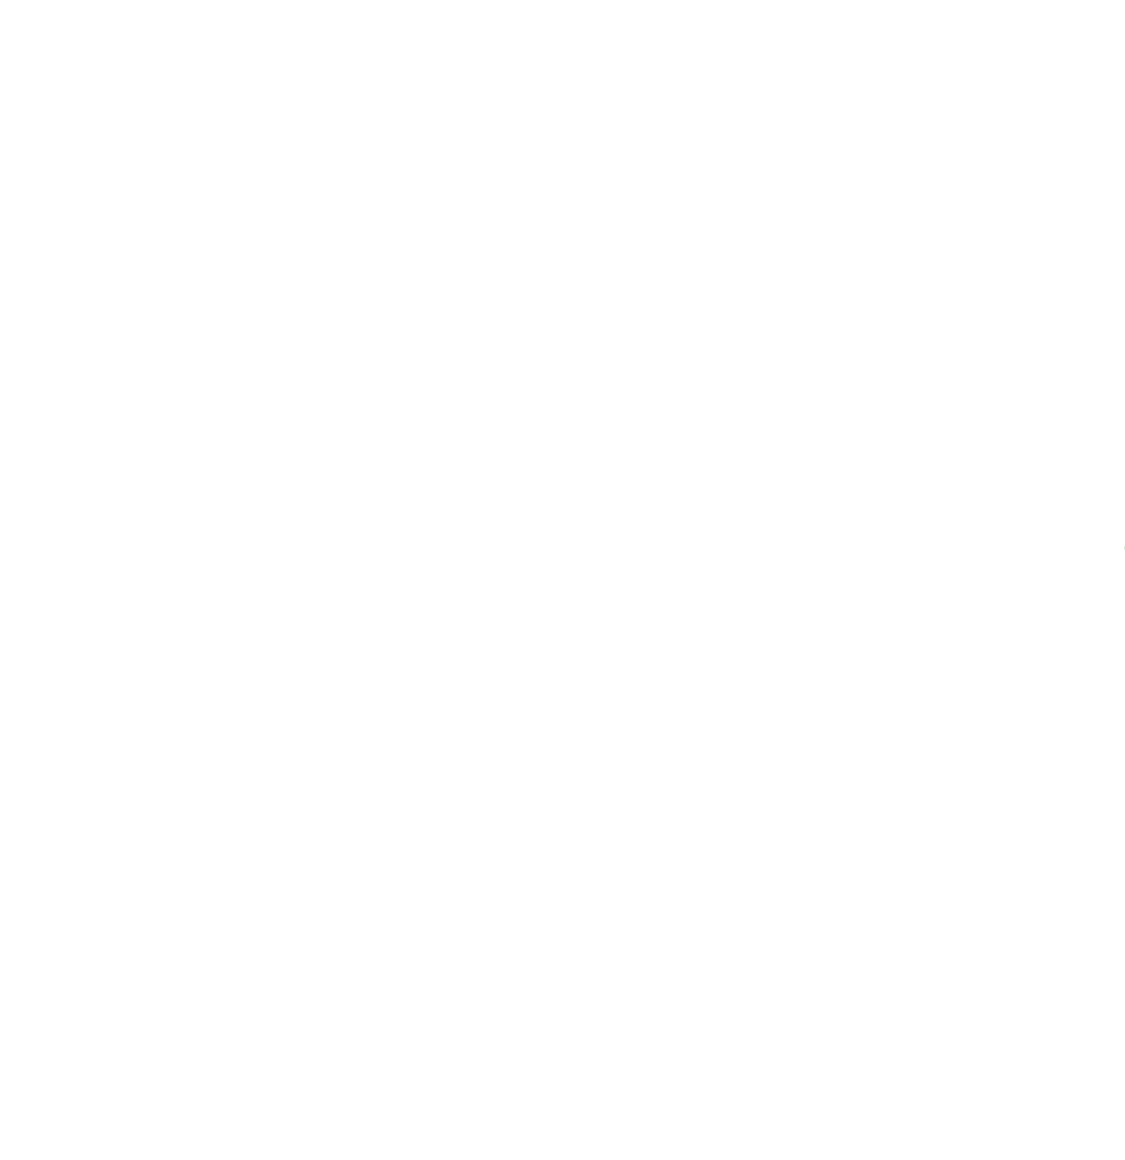 McCusker-Gill white shamrock logo